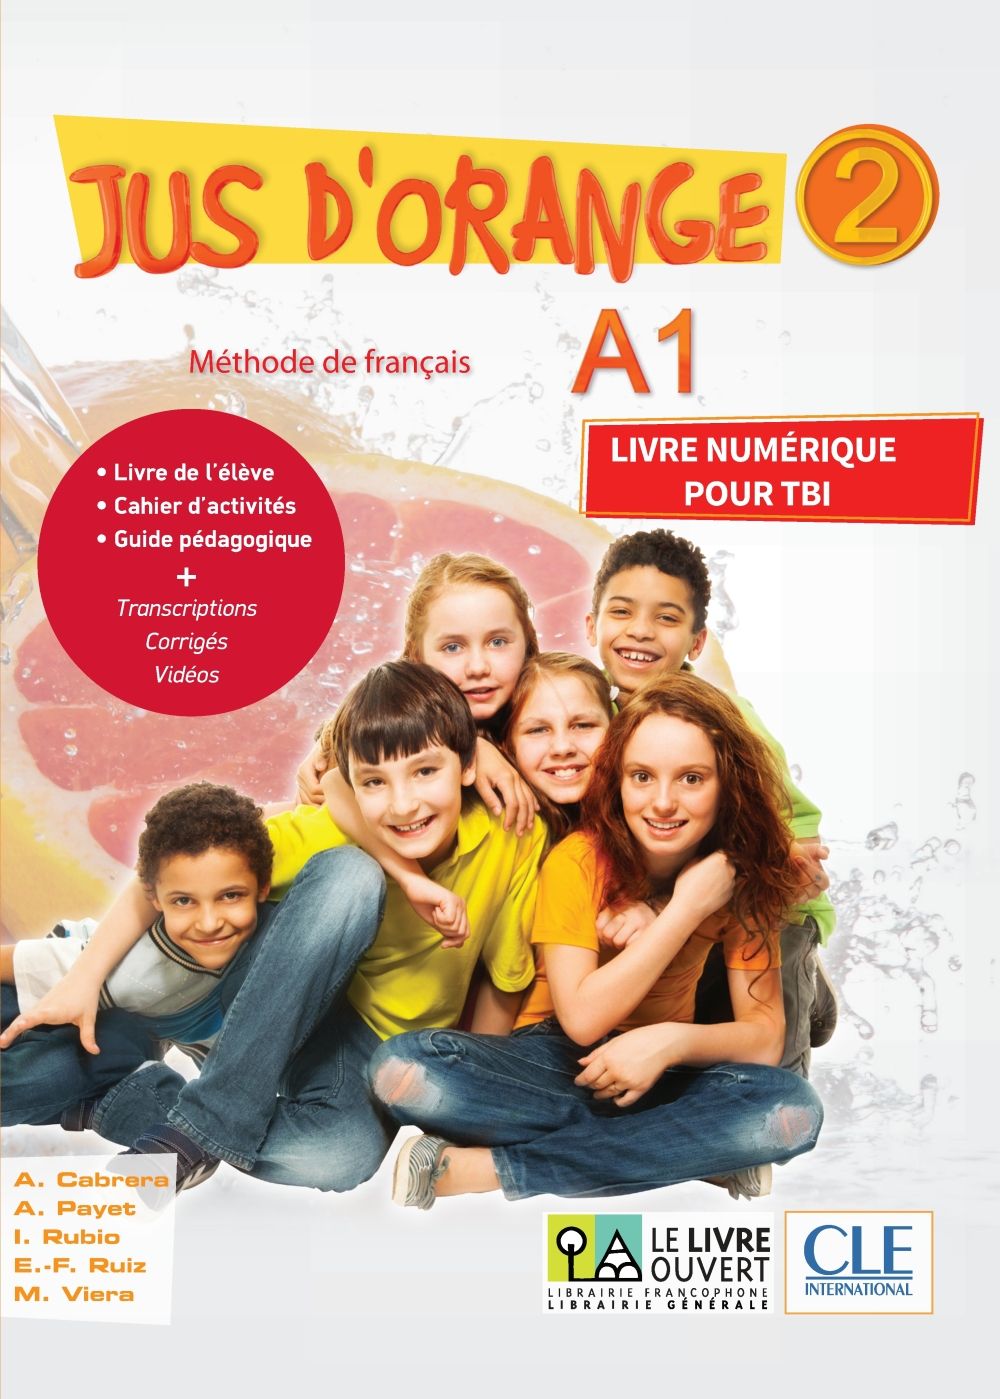 Jus d'Orange 2 - A1 TBI